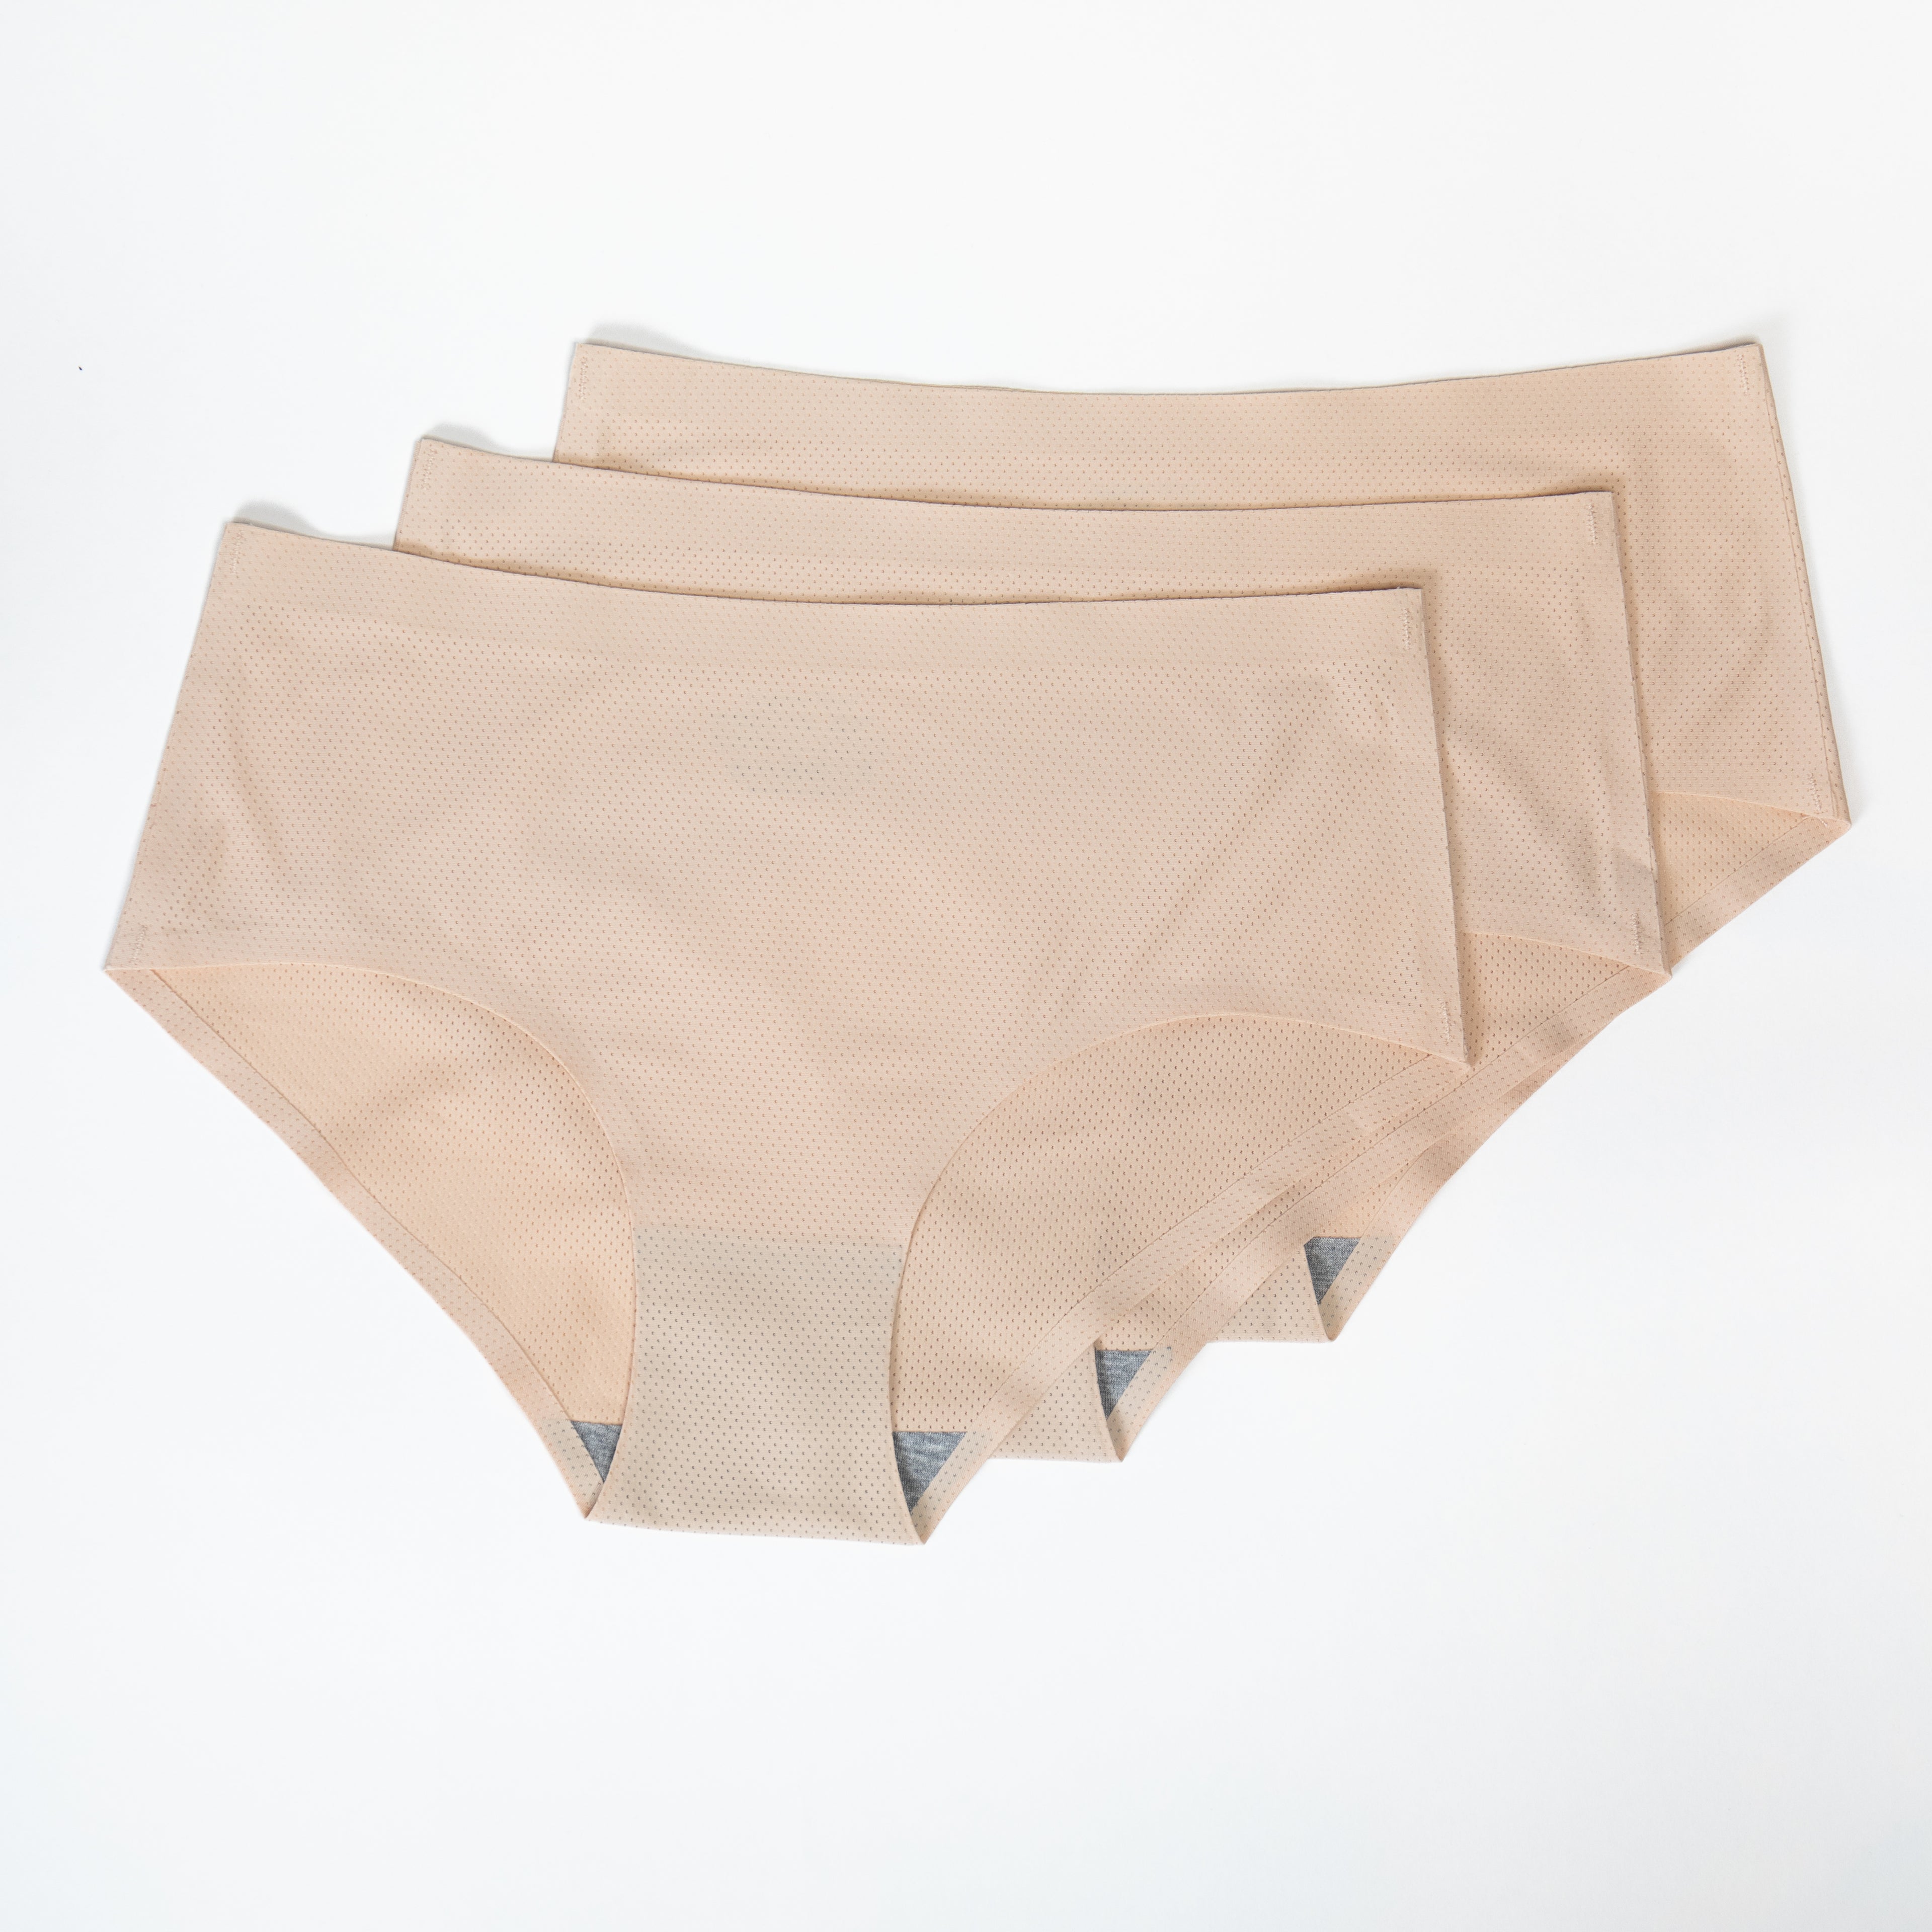 RMN94 - Micro Nylon High Cut Panty